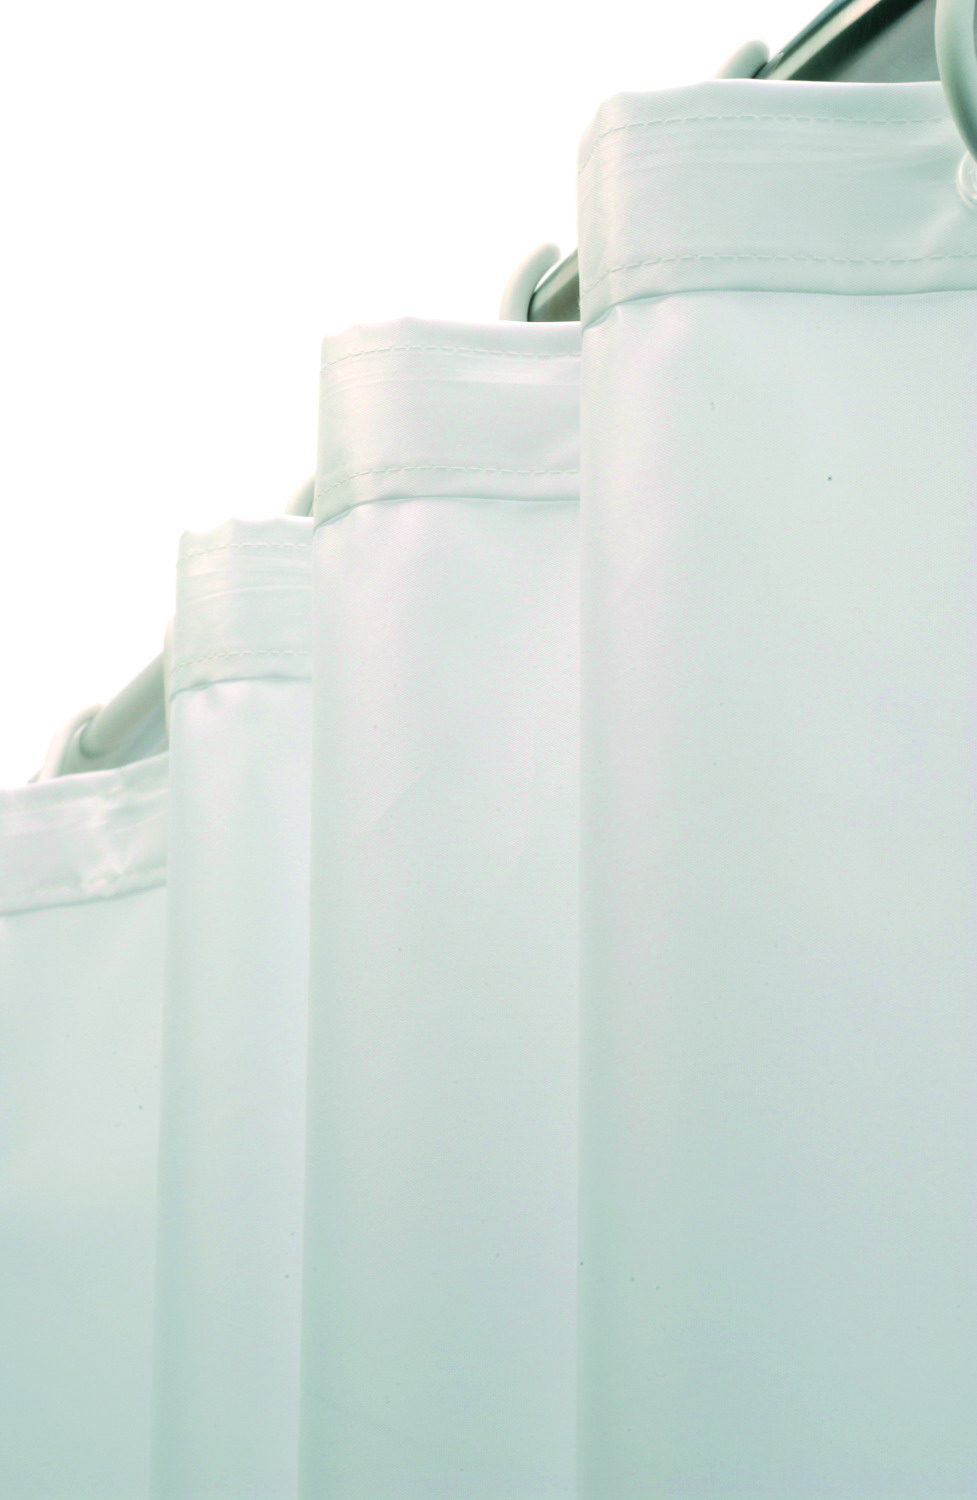 Foto - Duschvorhang Kunststoff weiß - Serie Evolution von Lehnen